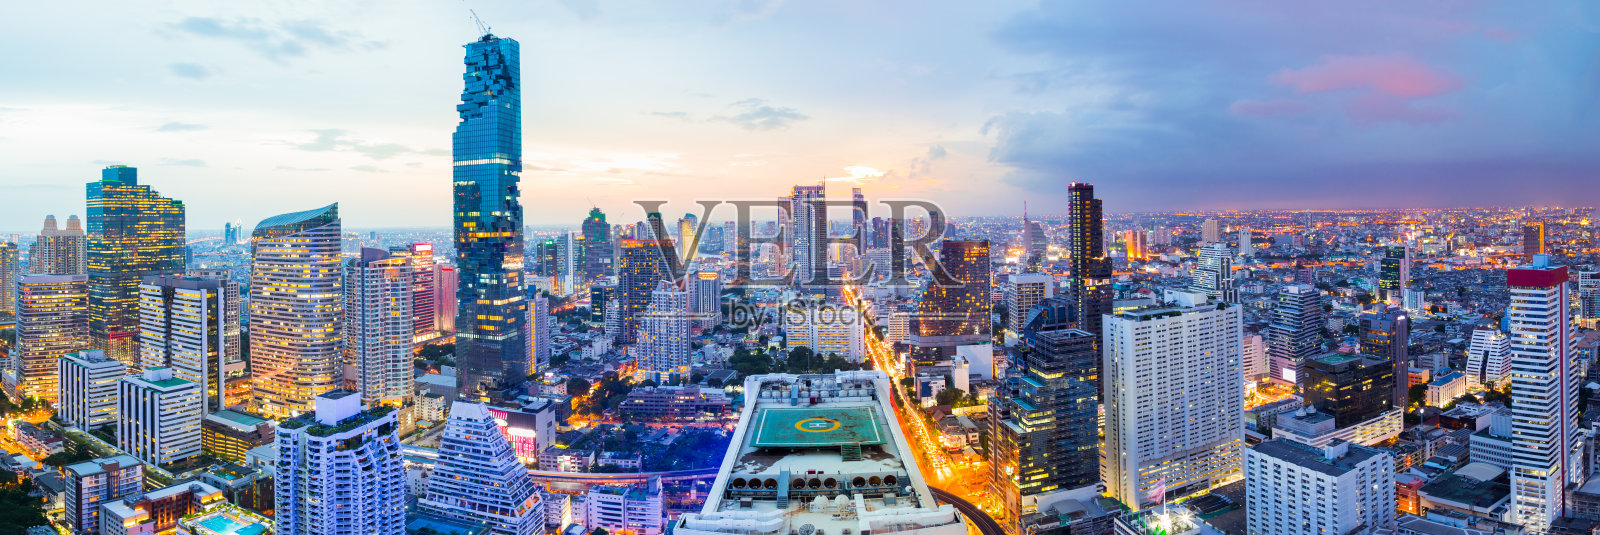 曼谷商业区日落时的全景照片摄影图片